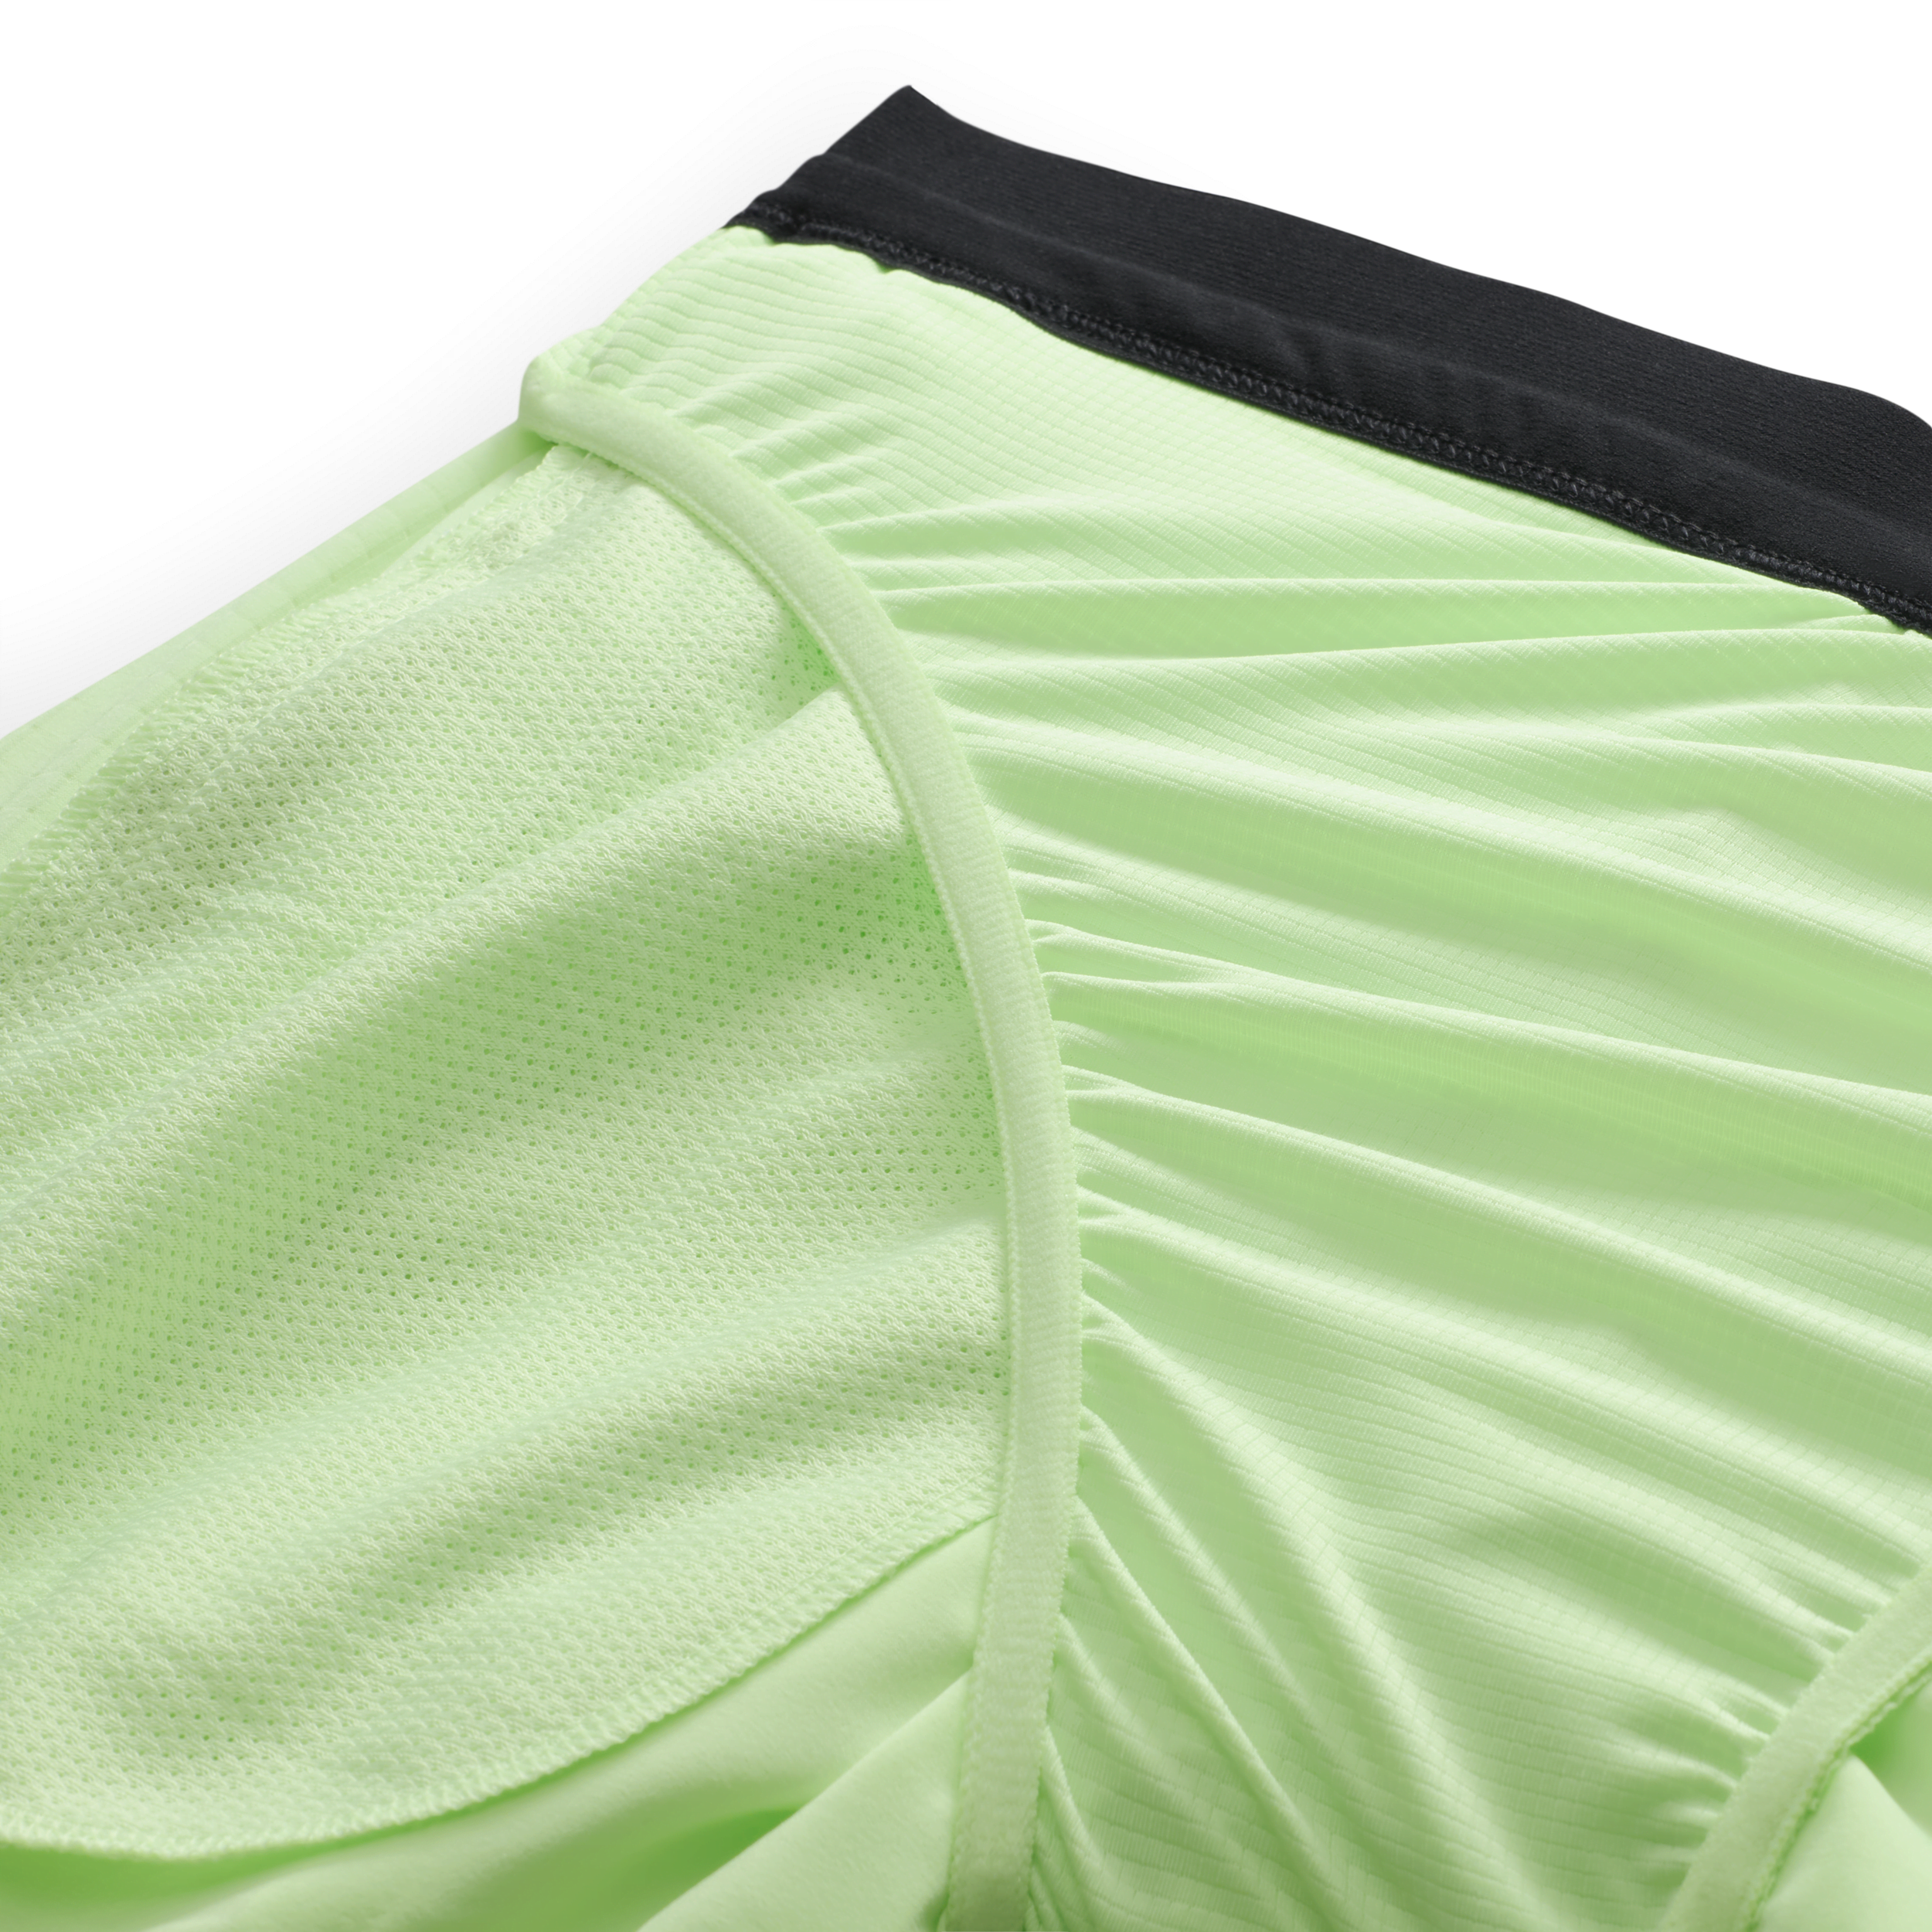 Nike Trail Second Sunrise hardloopshorts met Dri-FIT en binnenbroek voor heren (13 cm) Groen